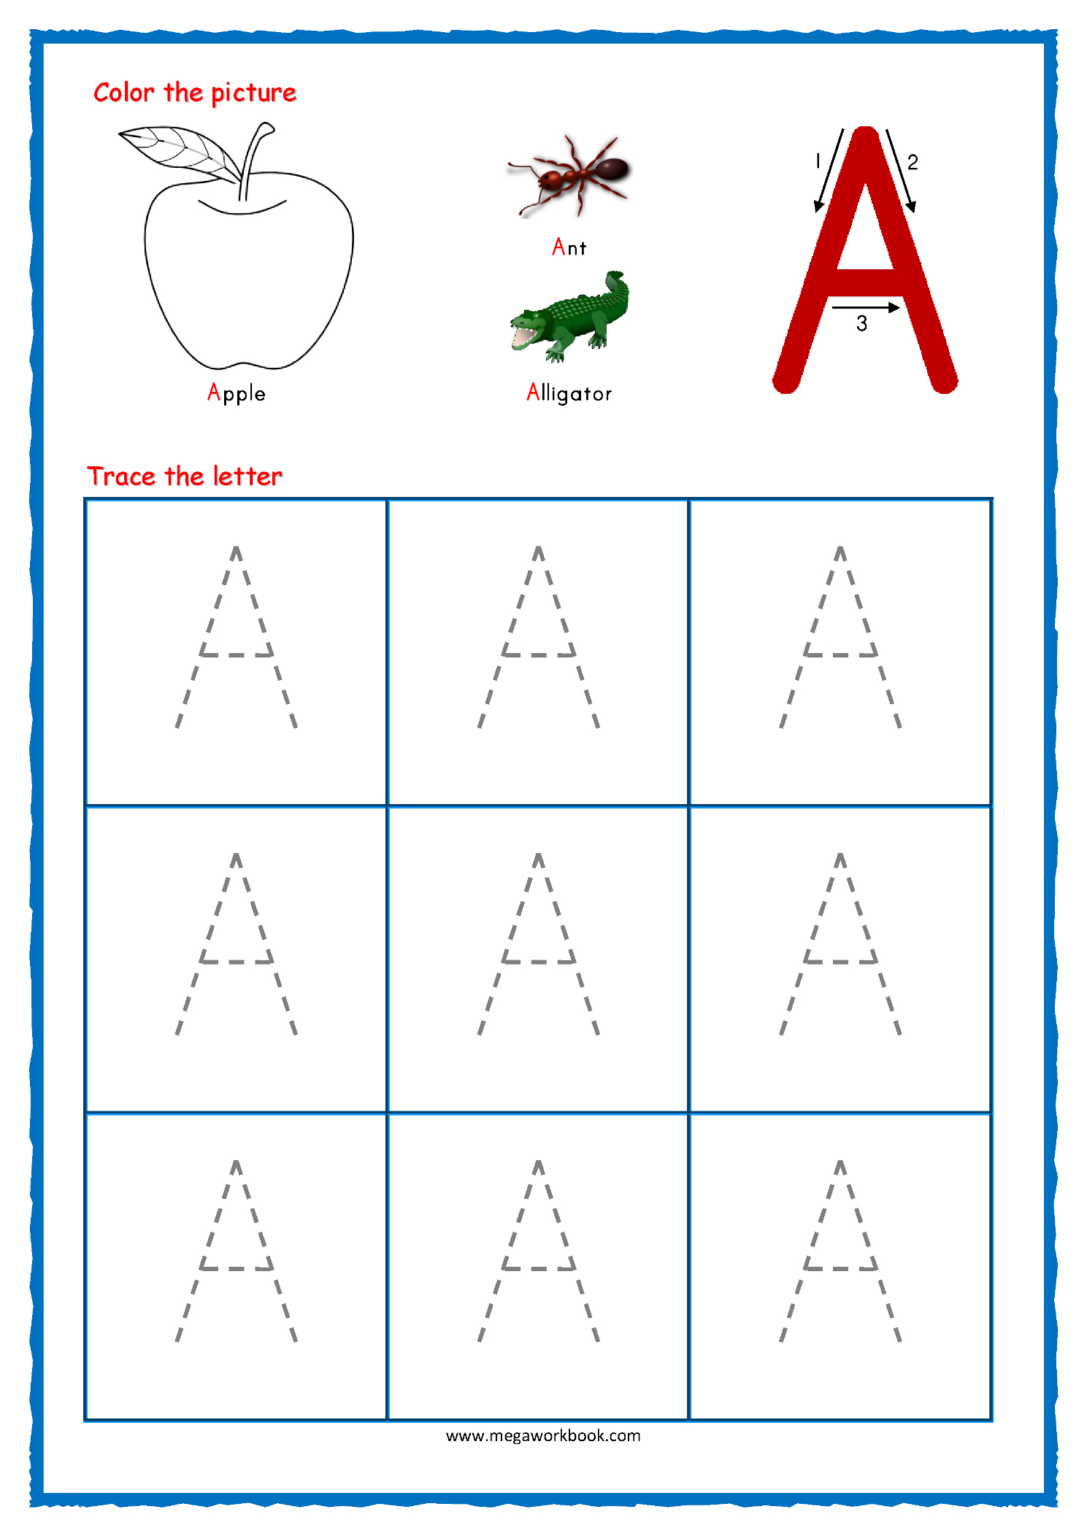 handwriting-free-printable-preschool-worksheets-tracing-letters